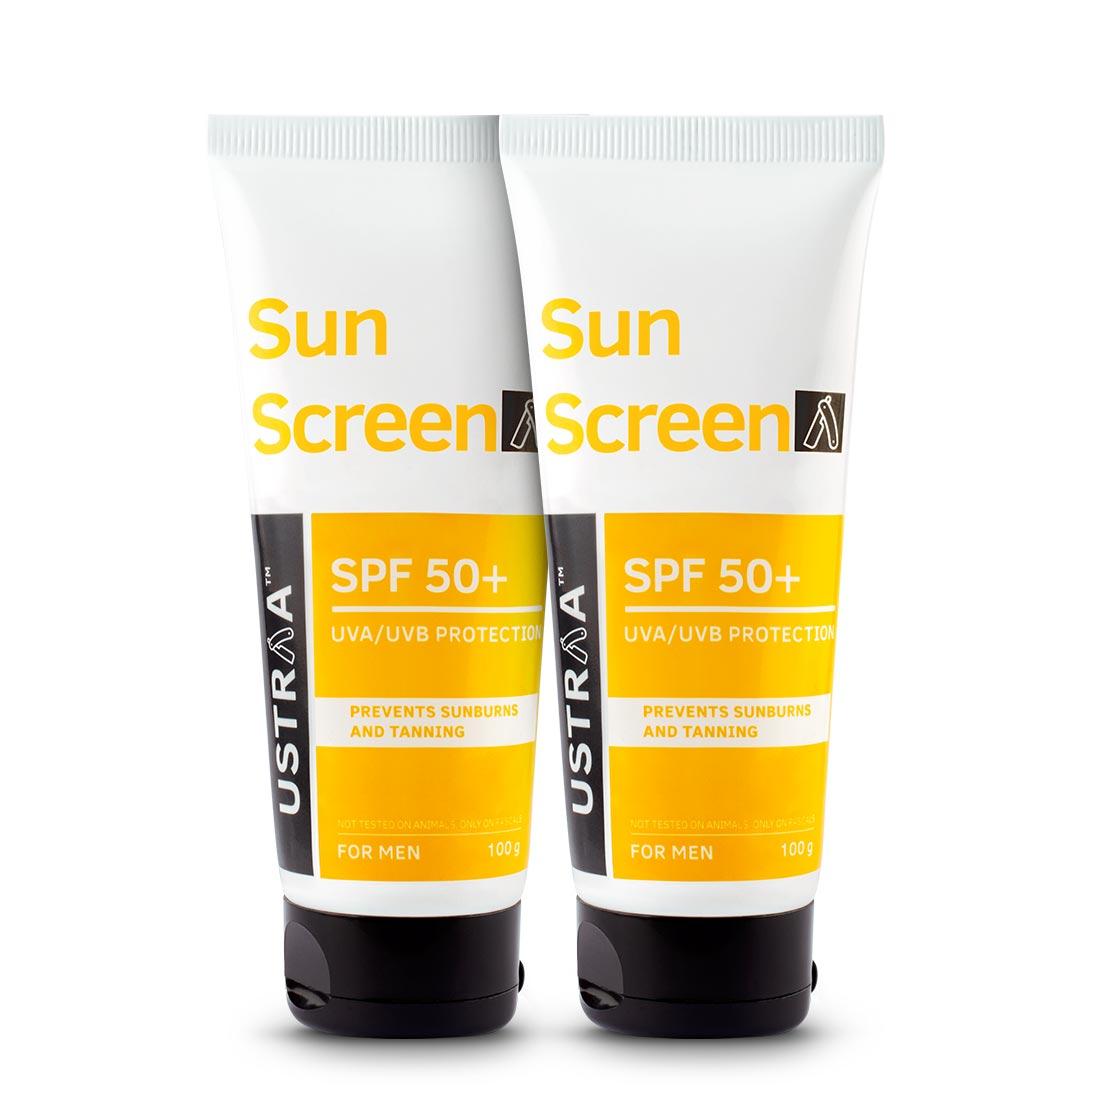 Sunscreen for men SPF 50+ 100g (Set of 2)